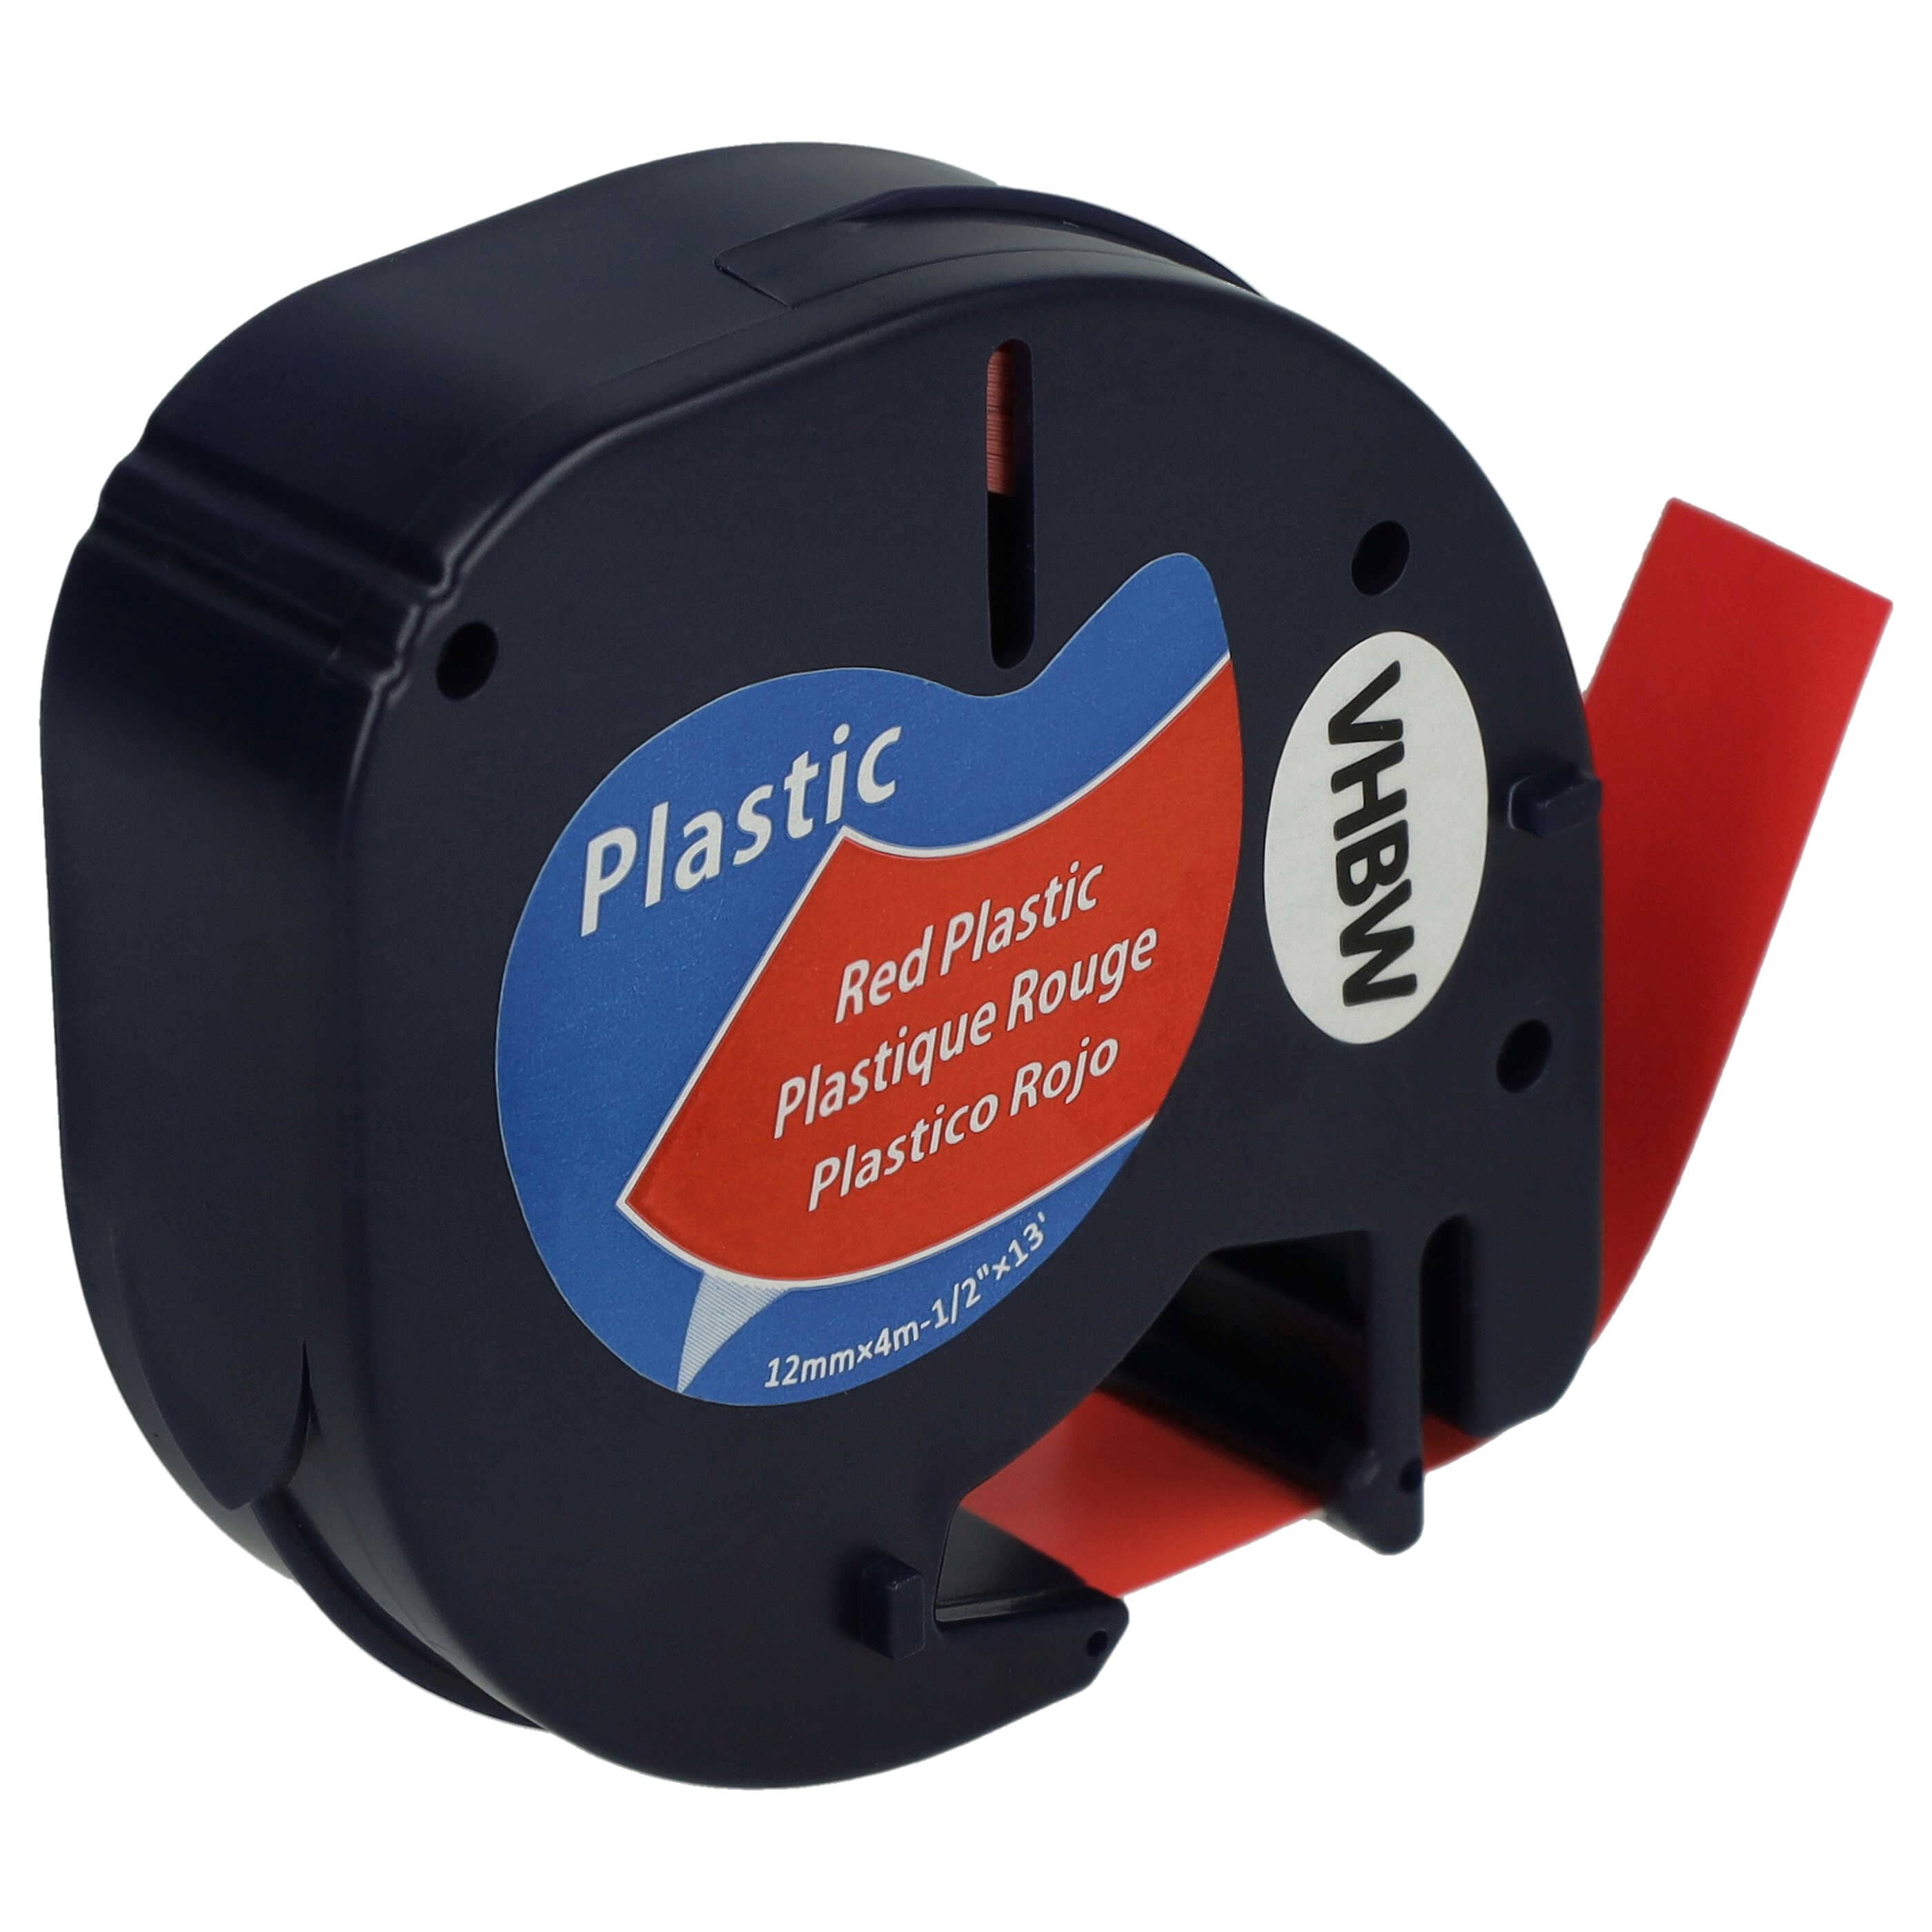 Casete cinta escritura plástico reemplaza Dymo 91223, S0721630 Negro su Rojo